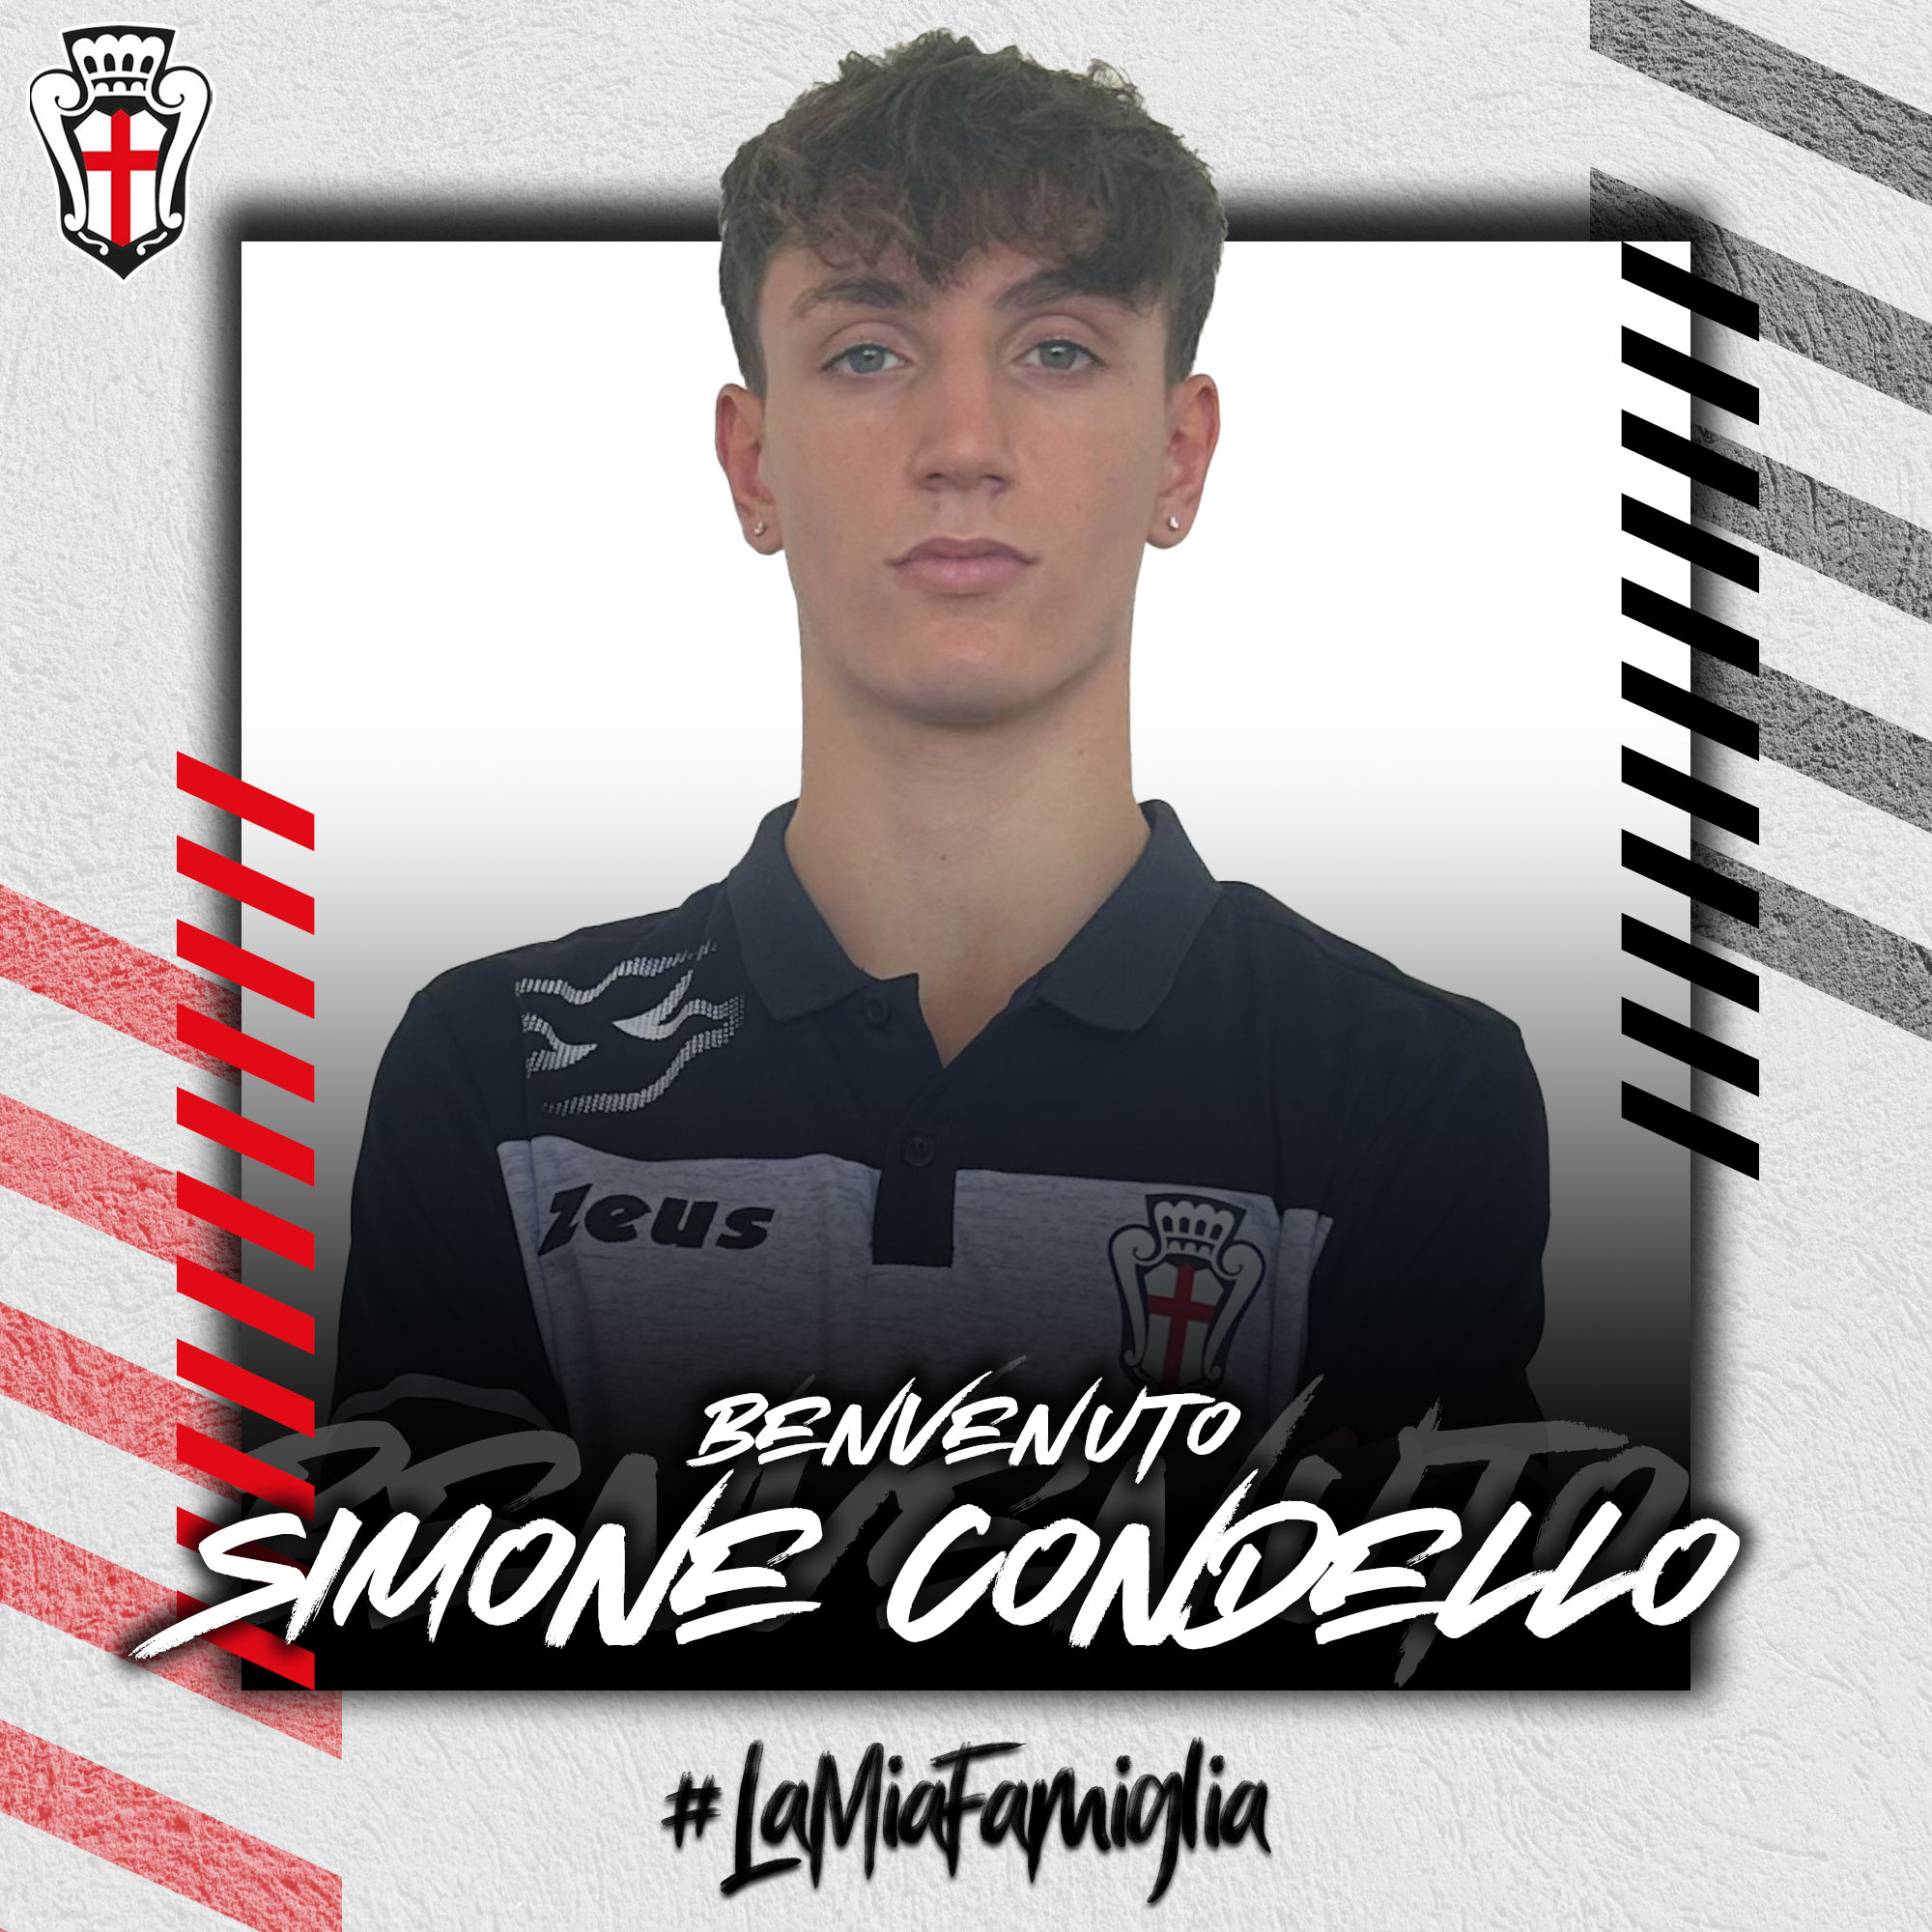 Benvenuto Simone Condello